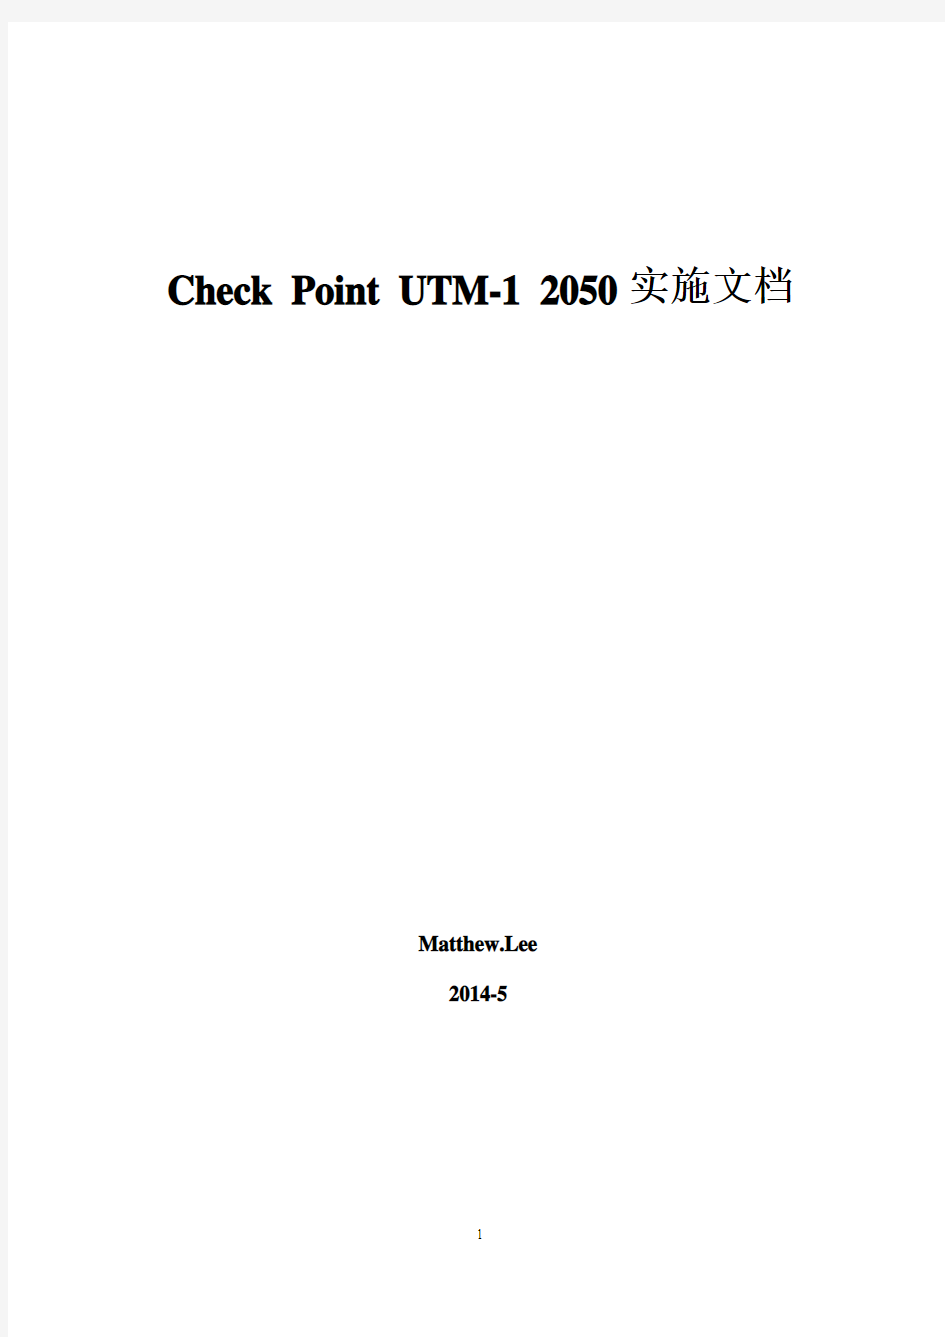 Check Point UTM-1 2050实施文档_V1.0